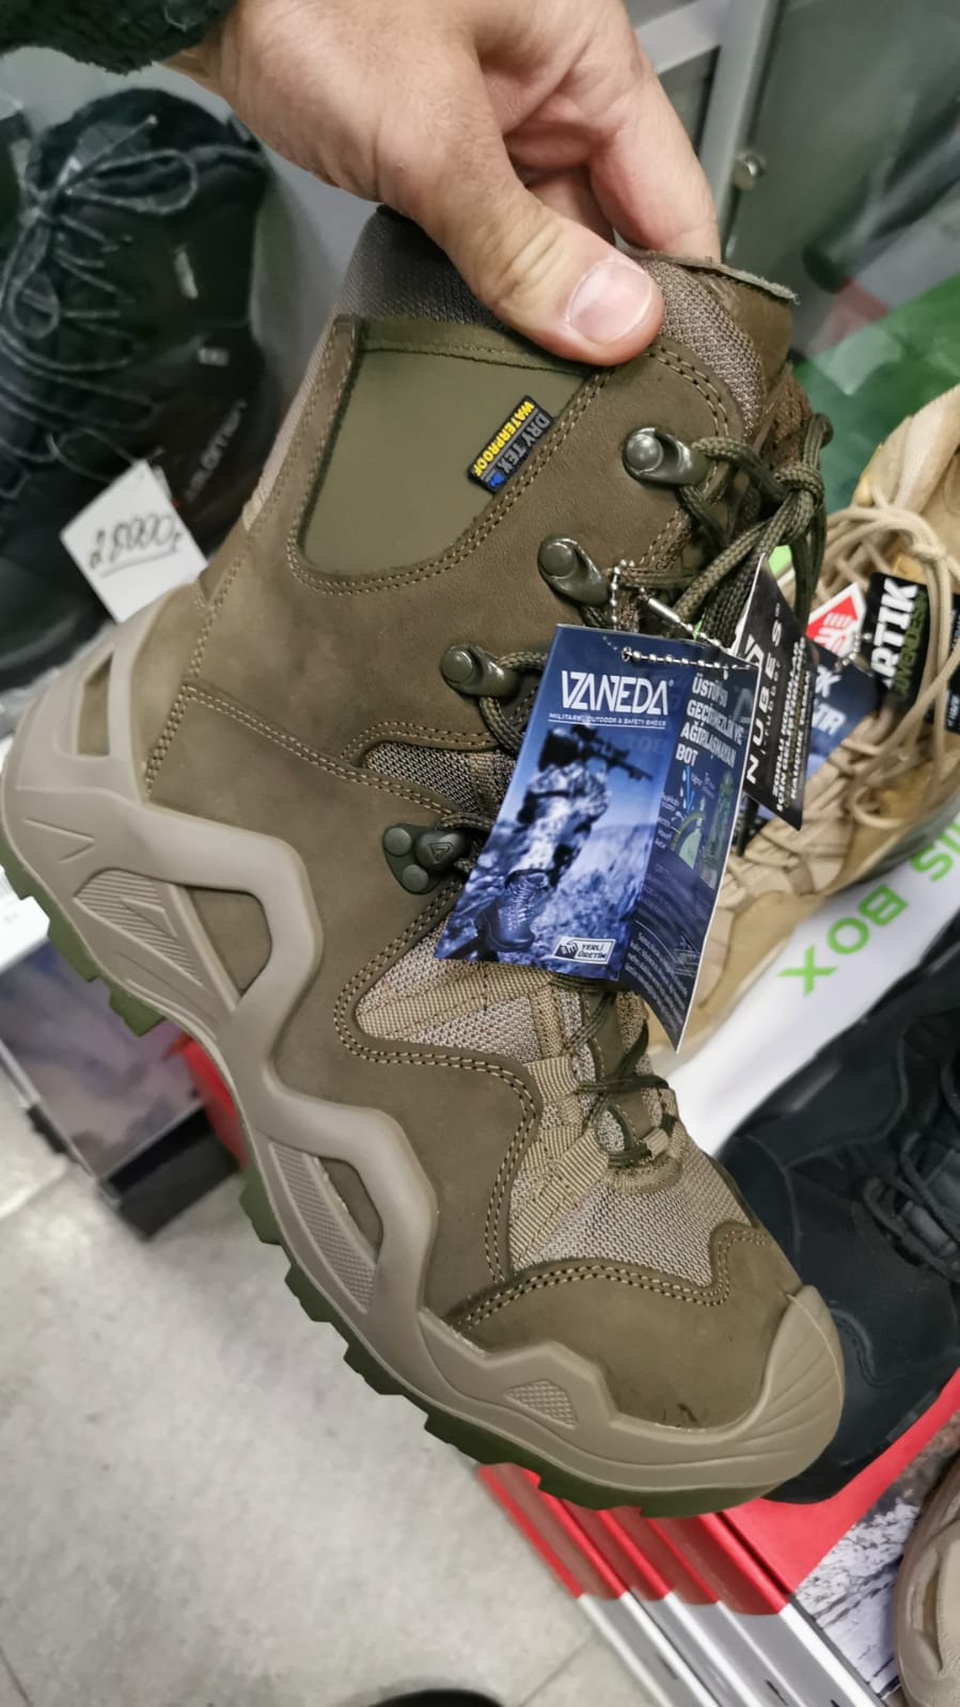 Тактические ботинки VANEDA на мембране DRY - 10 000 ₽, заказать онлайн.